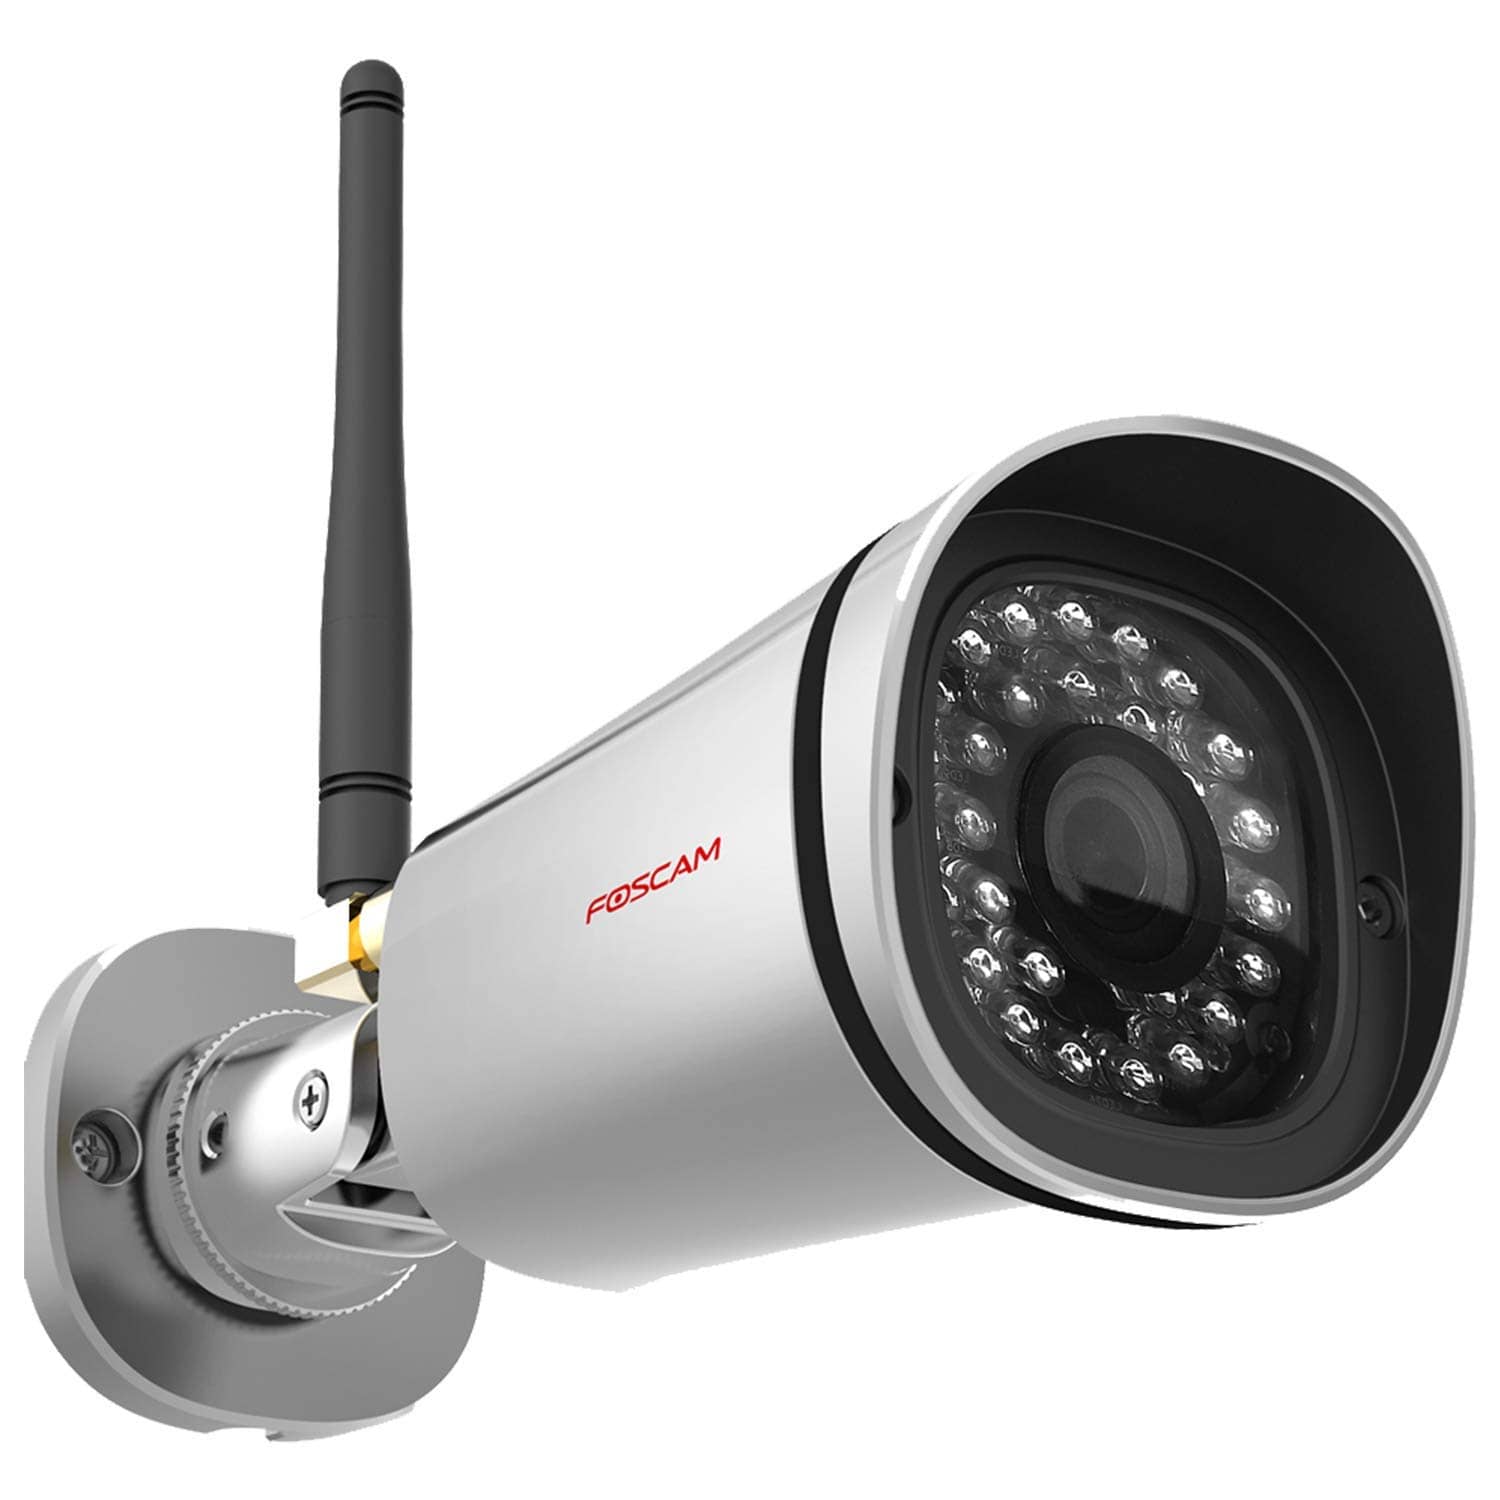 Foscam Security Camera